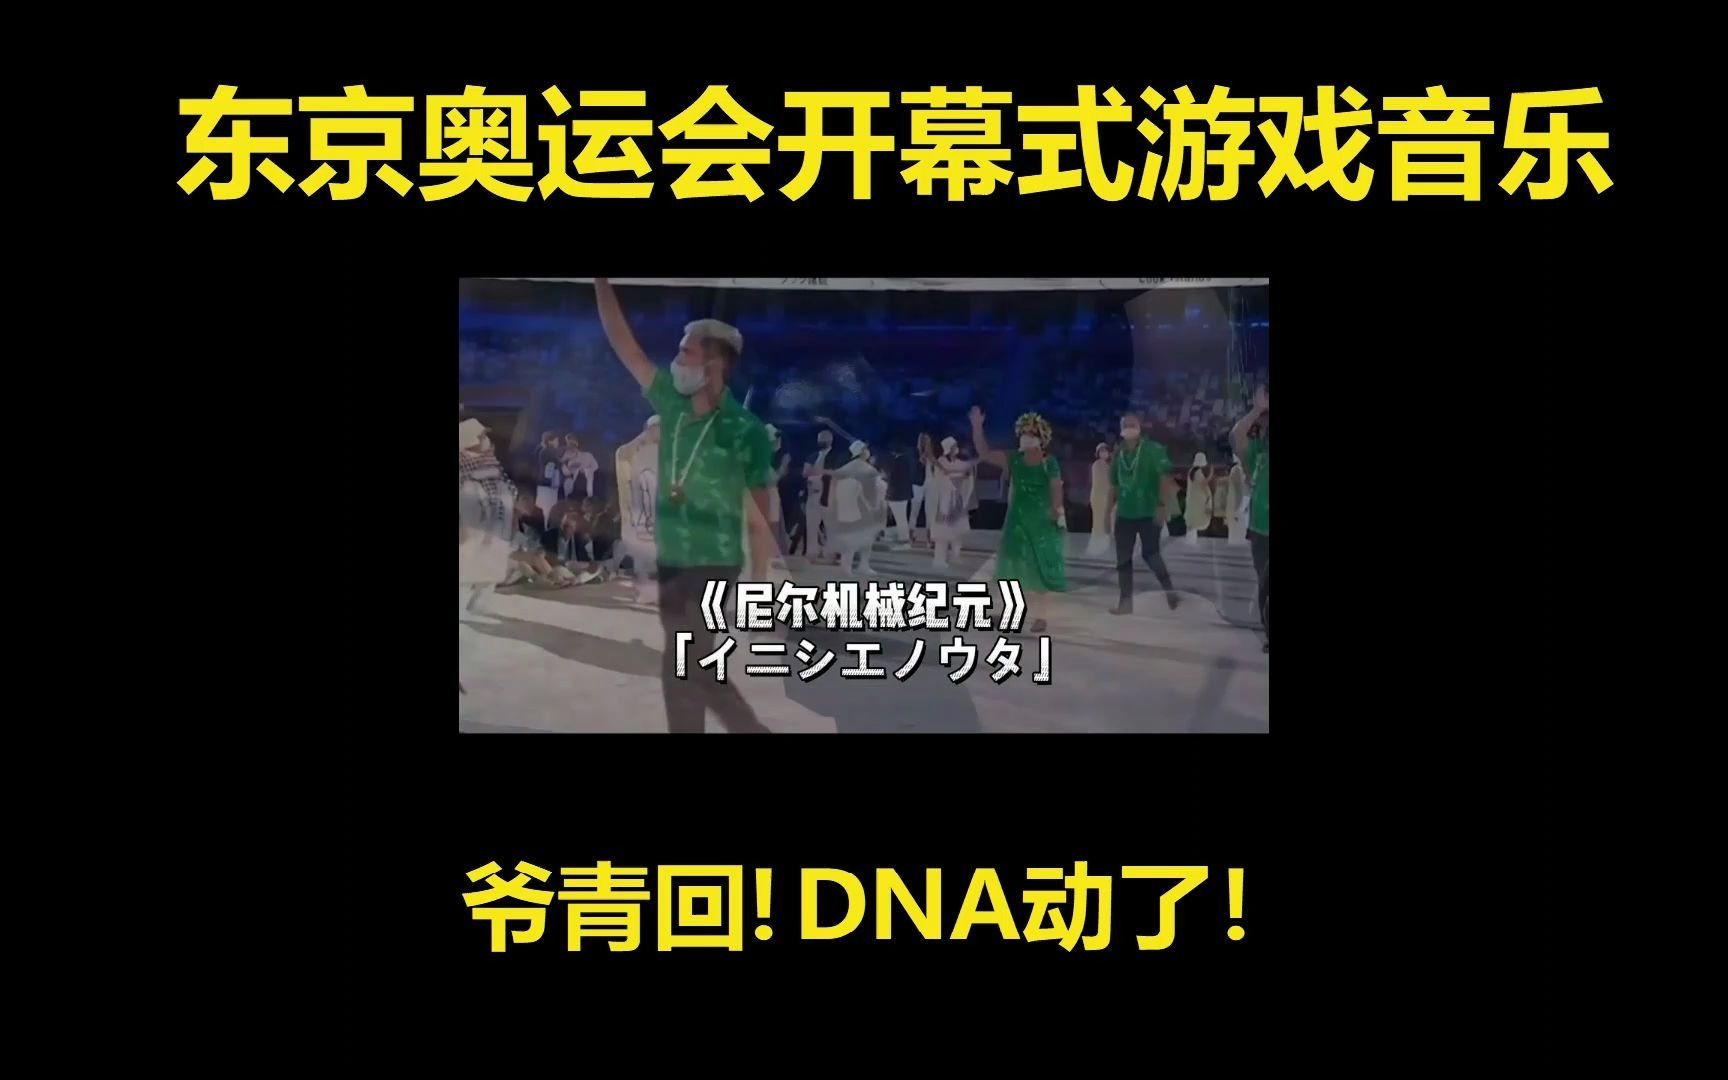 爷青回！DNA动了！东京奥运会开幕式运动员入场音乐竟是经典游戏BGM！